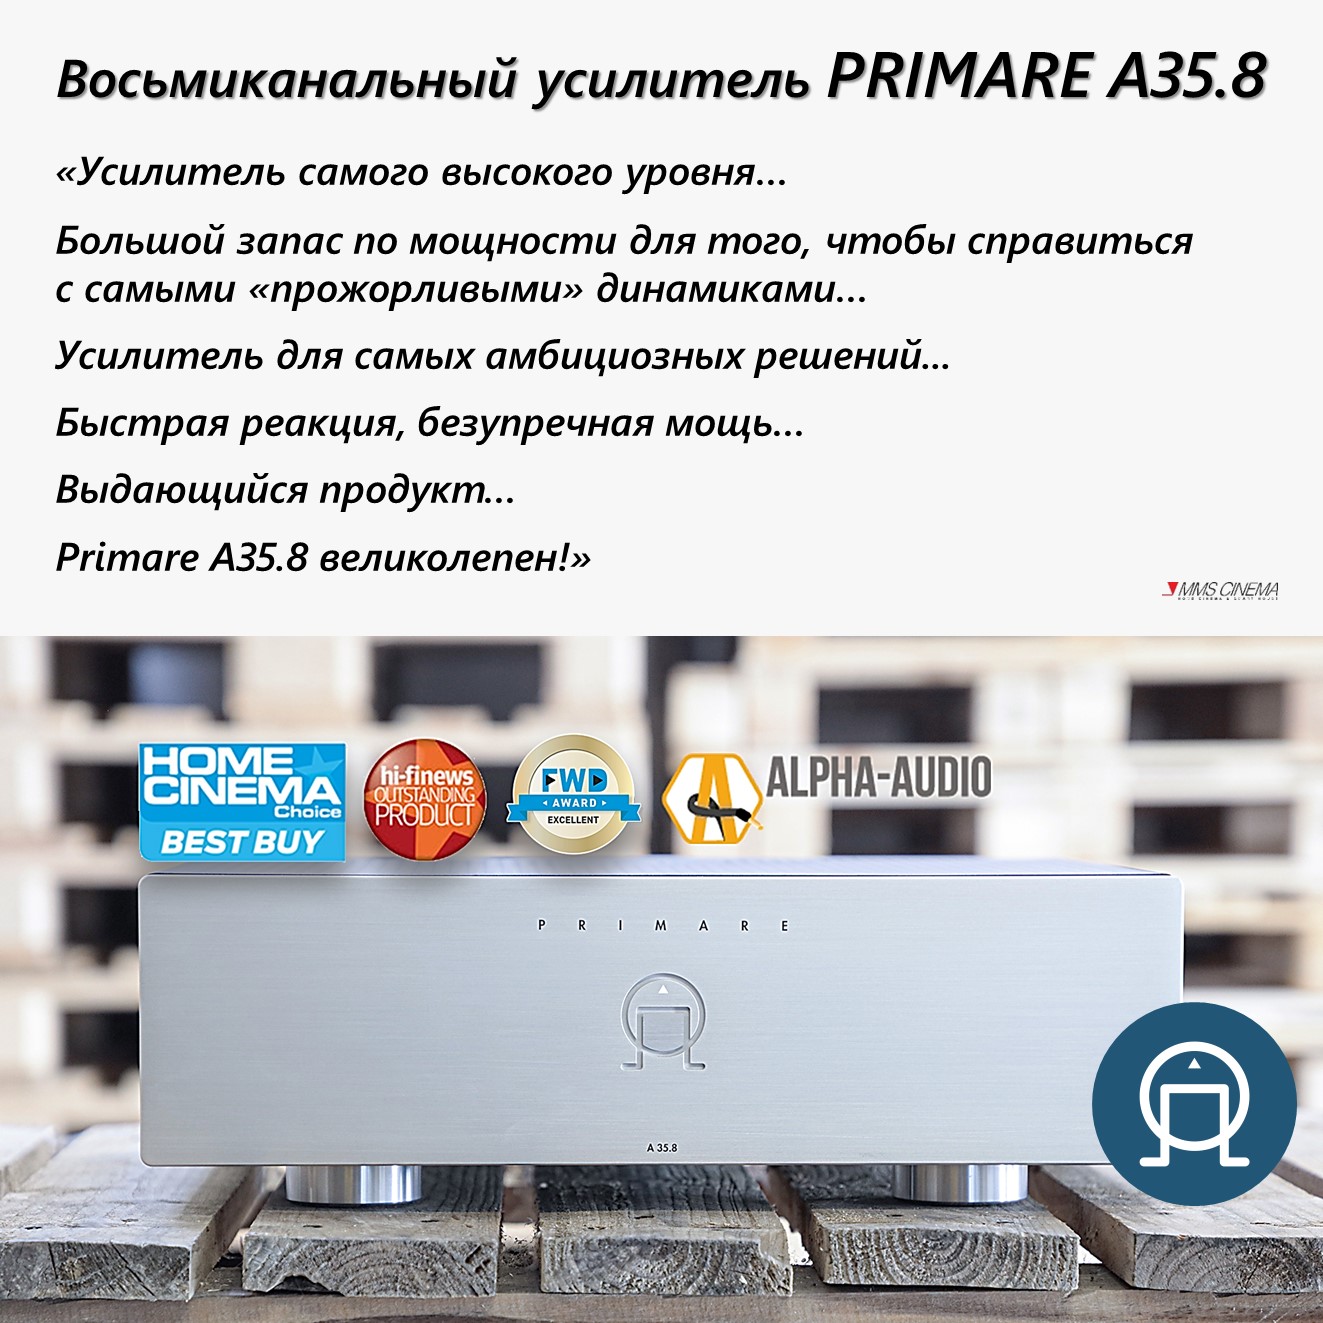 Новый восьмиканальный усилитель Primare A35.8: первые отзывы!